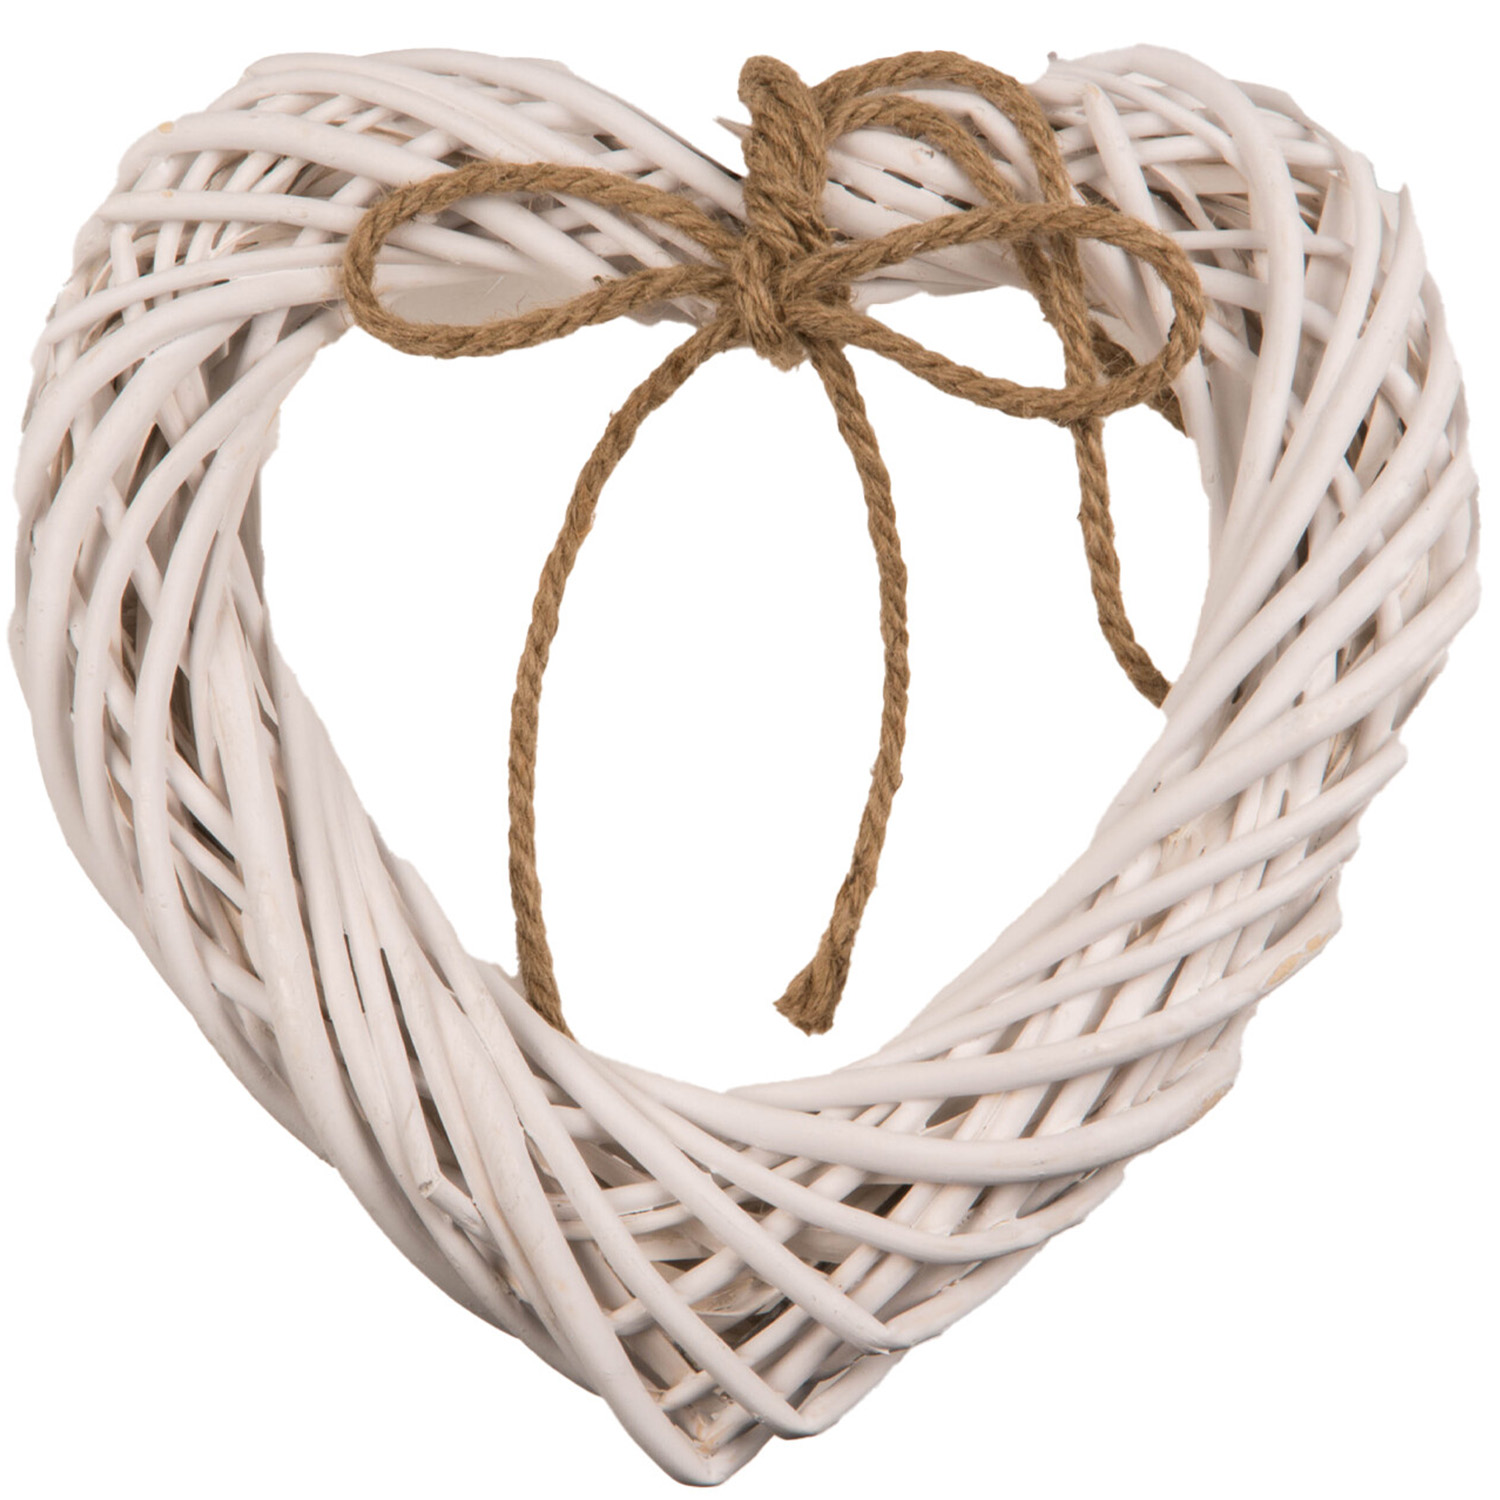 White Wicker Heart Ornament Image